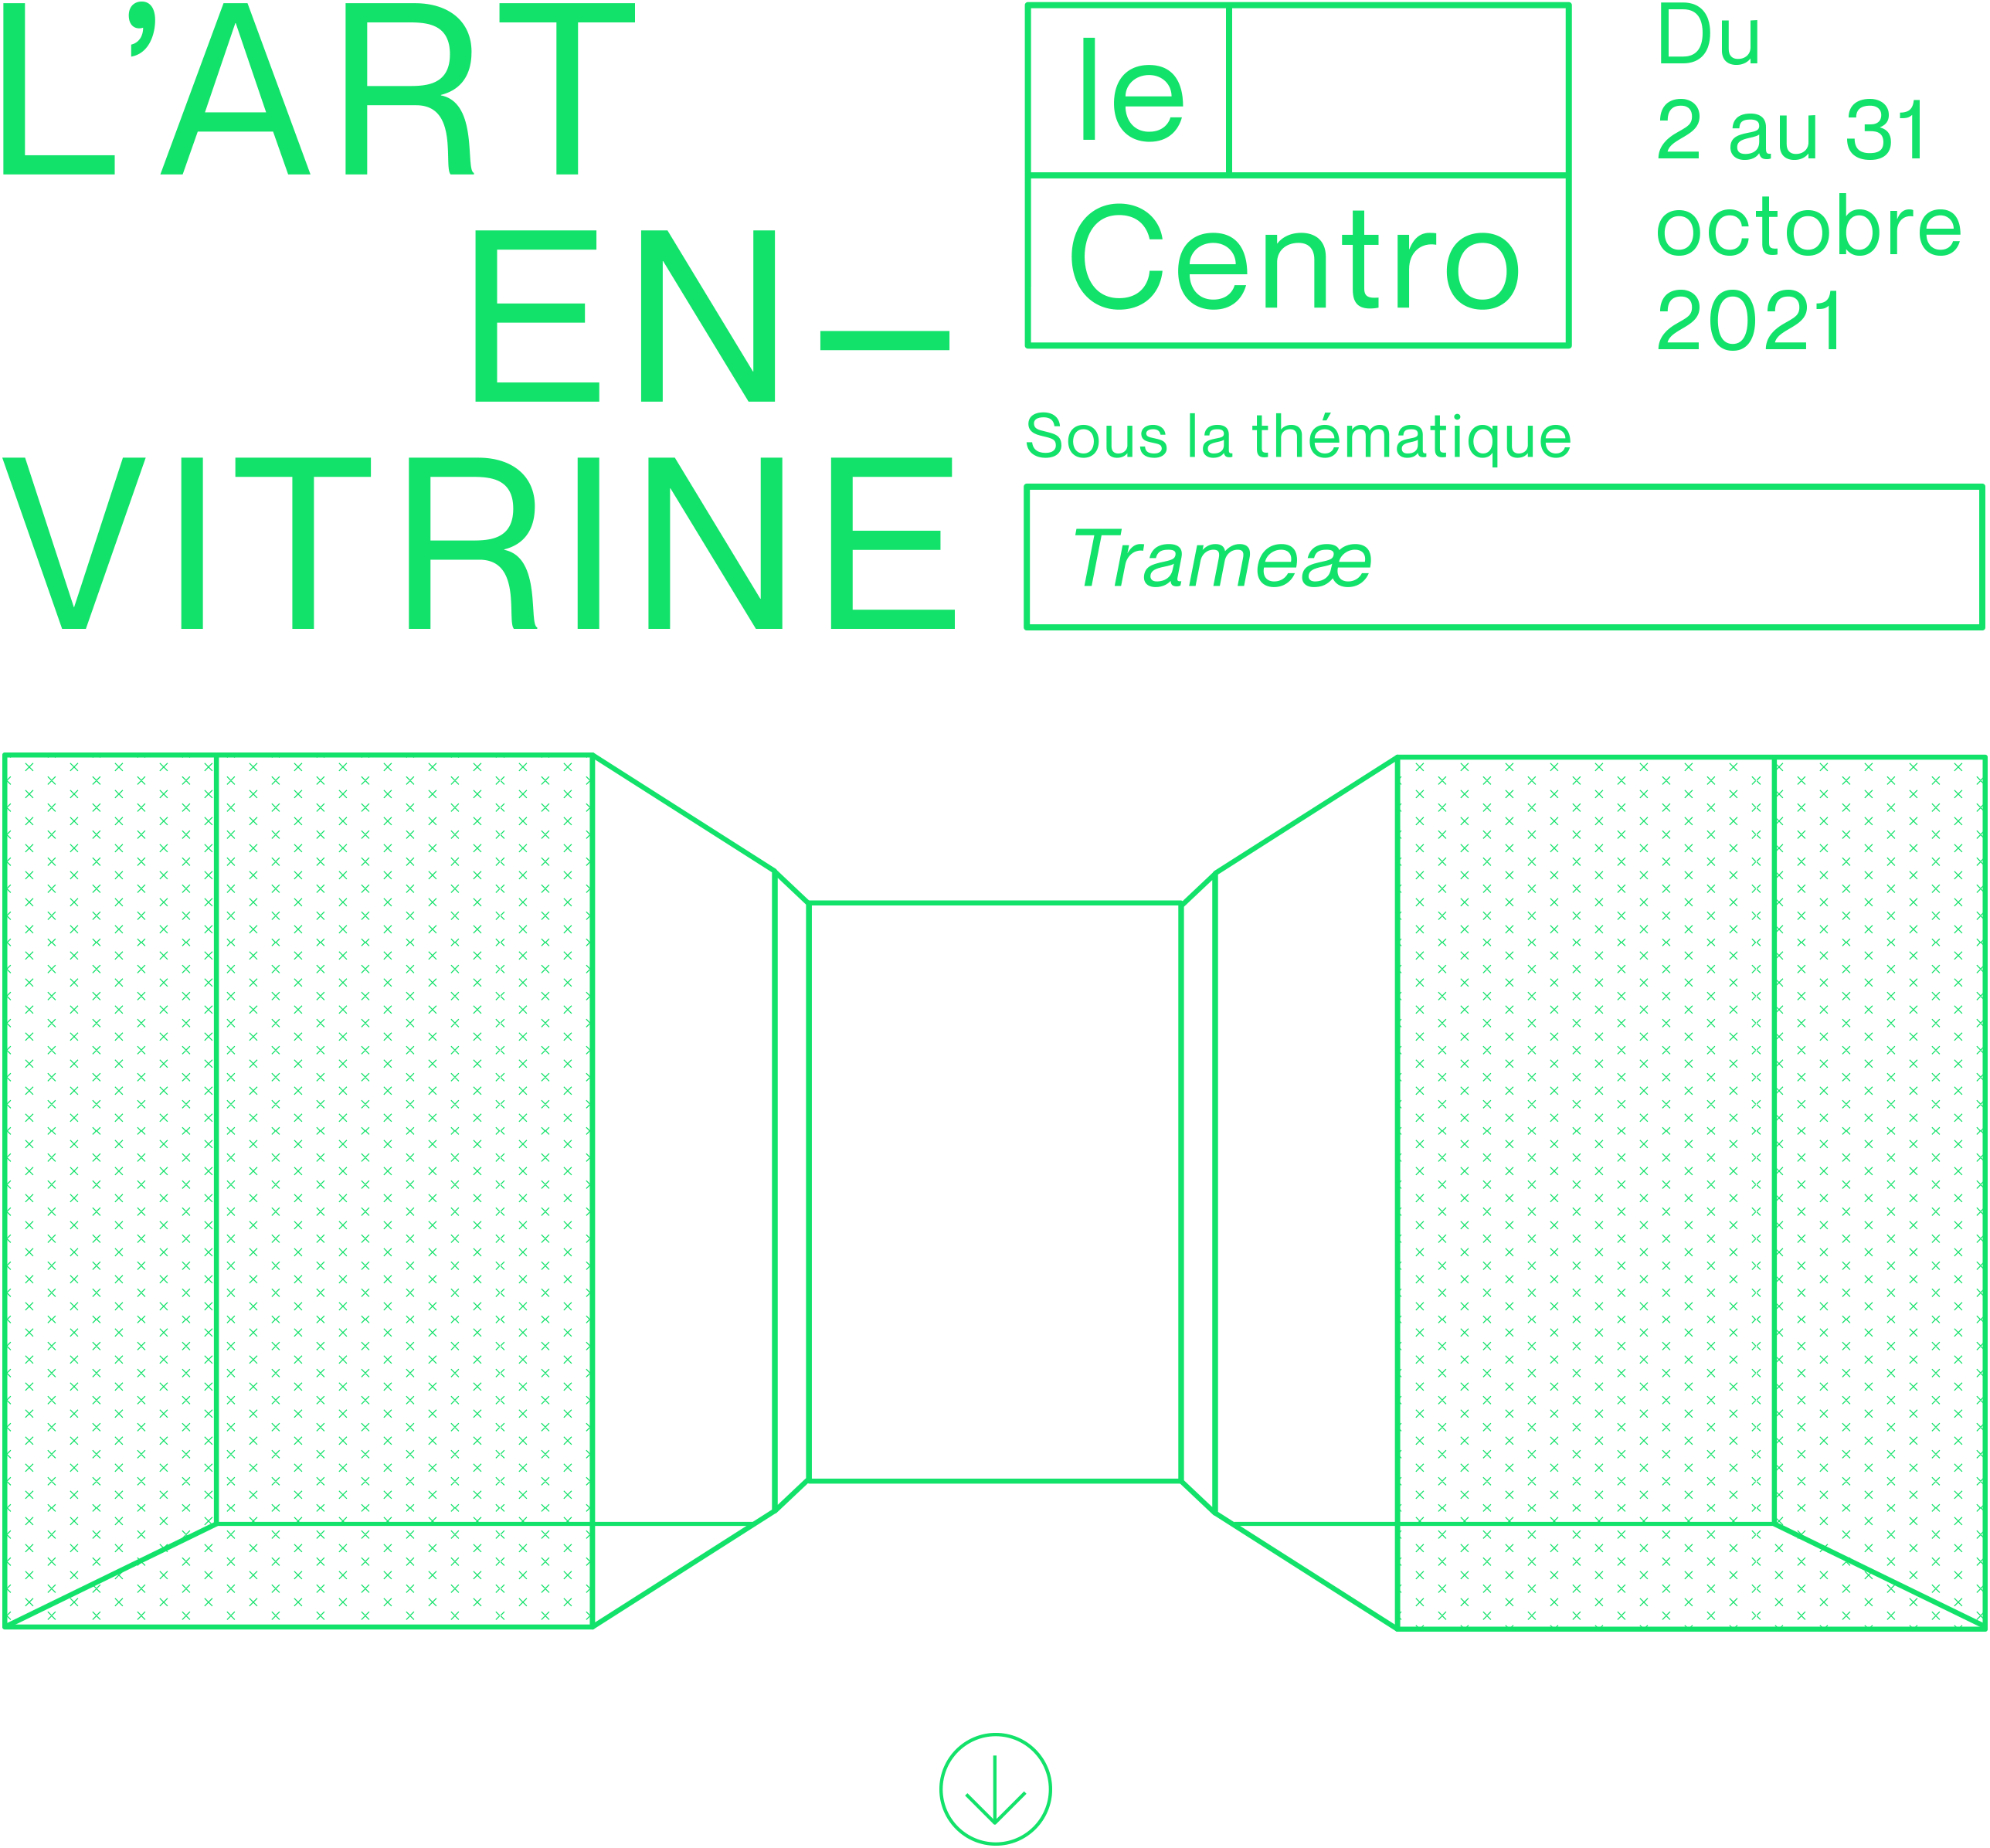 L'Art en vitrine - Le Centro - Du 2 au 31 octobre 2021